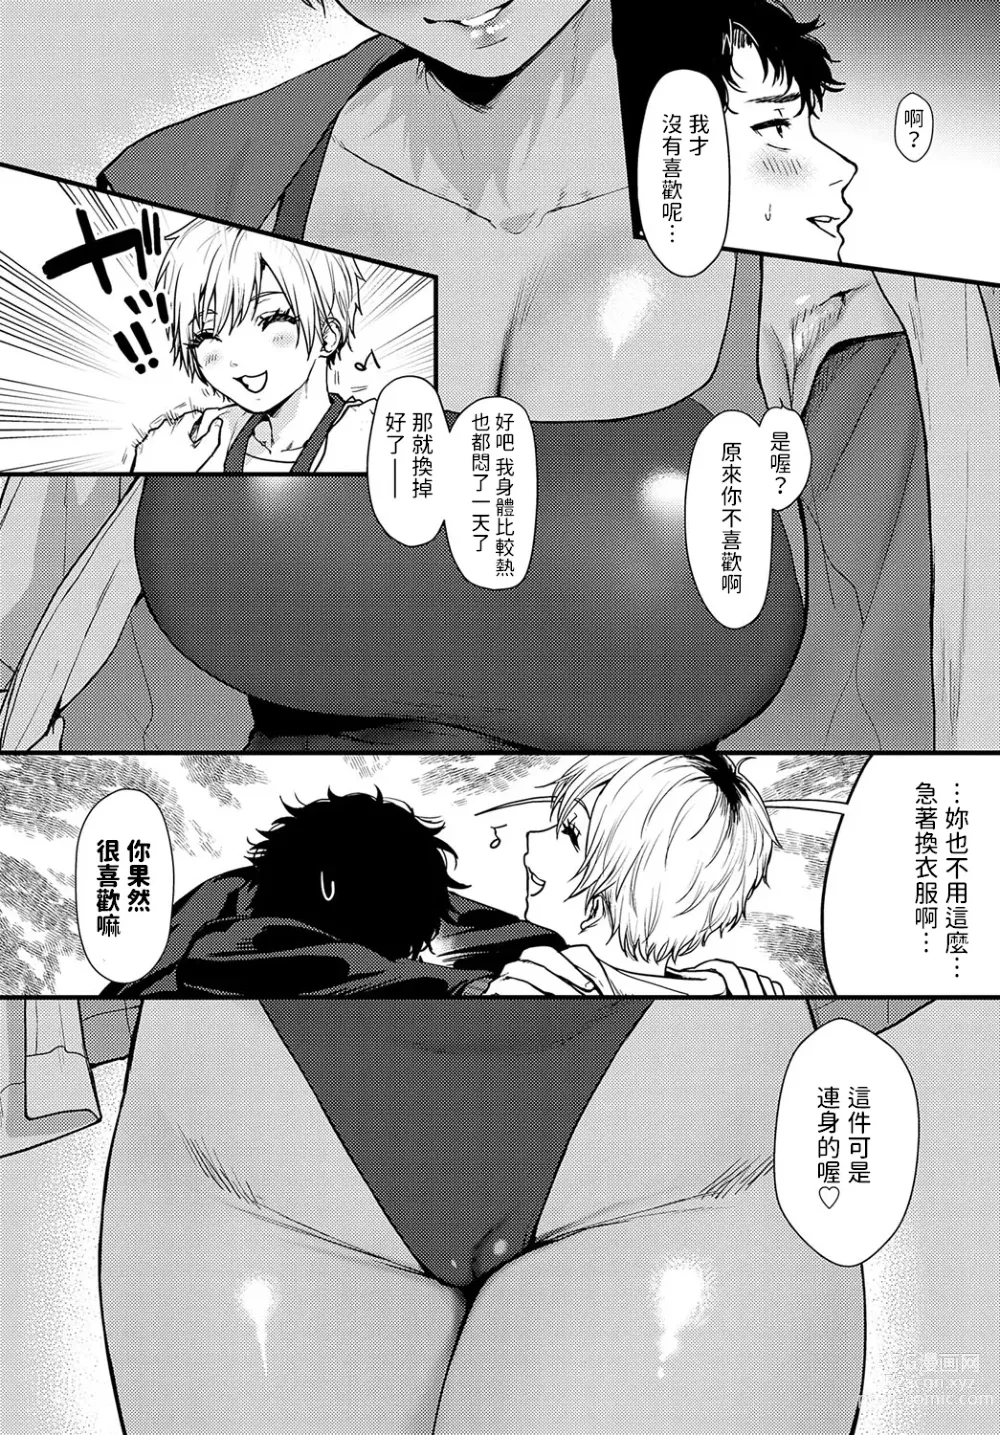 Page 9 of manga Misshitsu Swimsuit